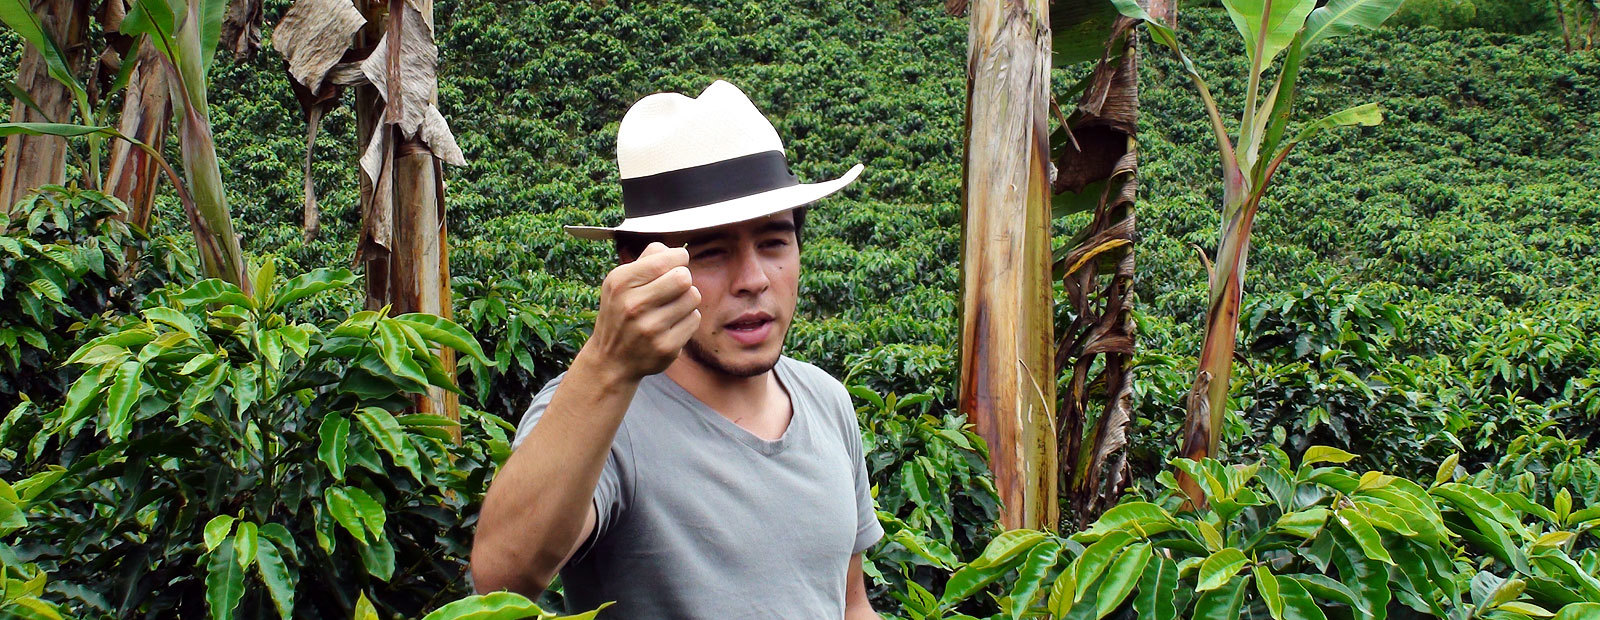 Man i hatt visar upp kaffeböna bland kaffebuskar på kaffeplantage